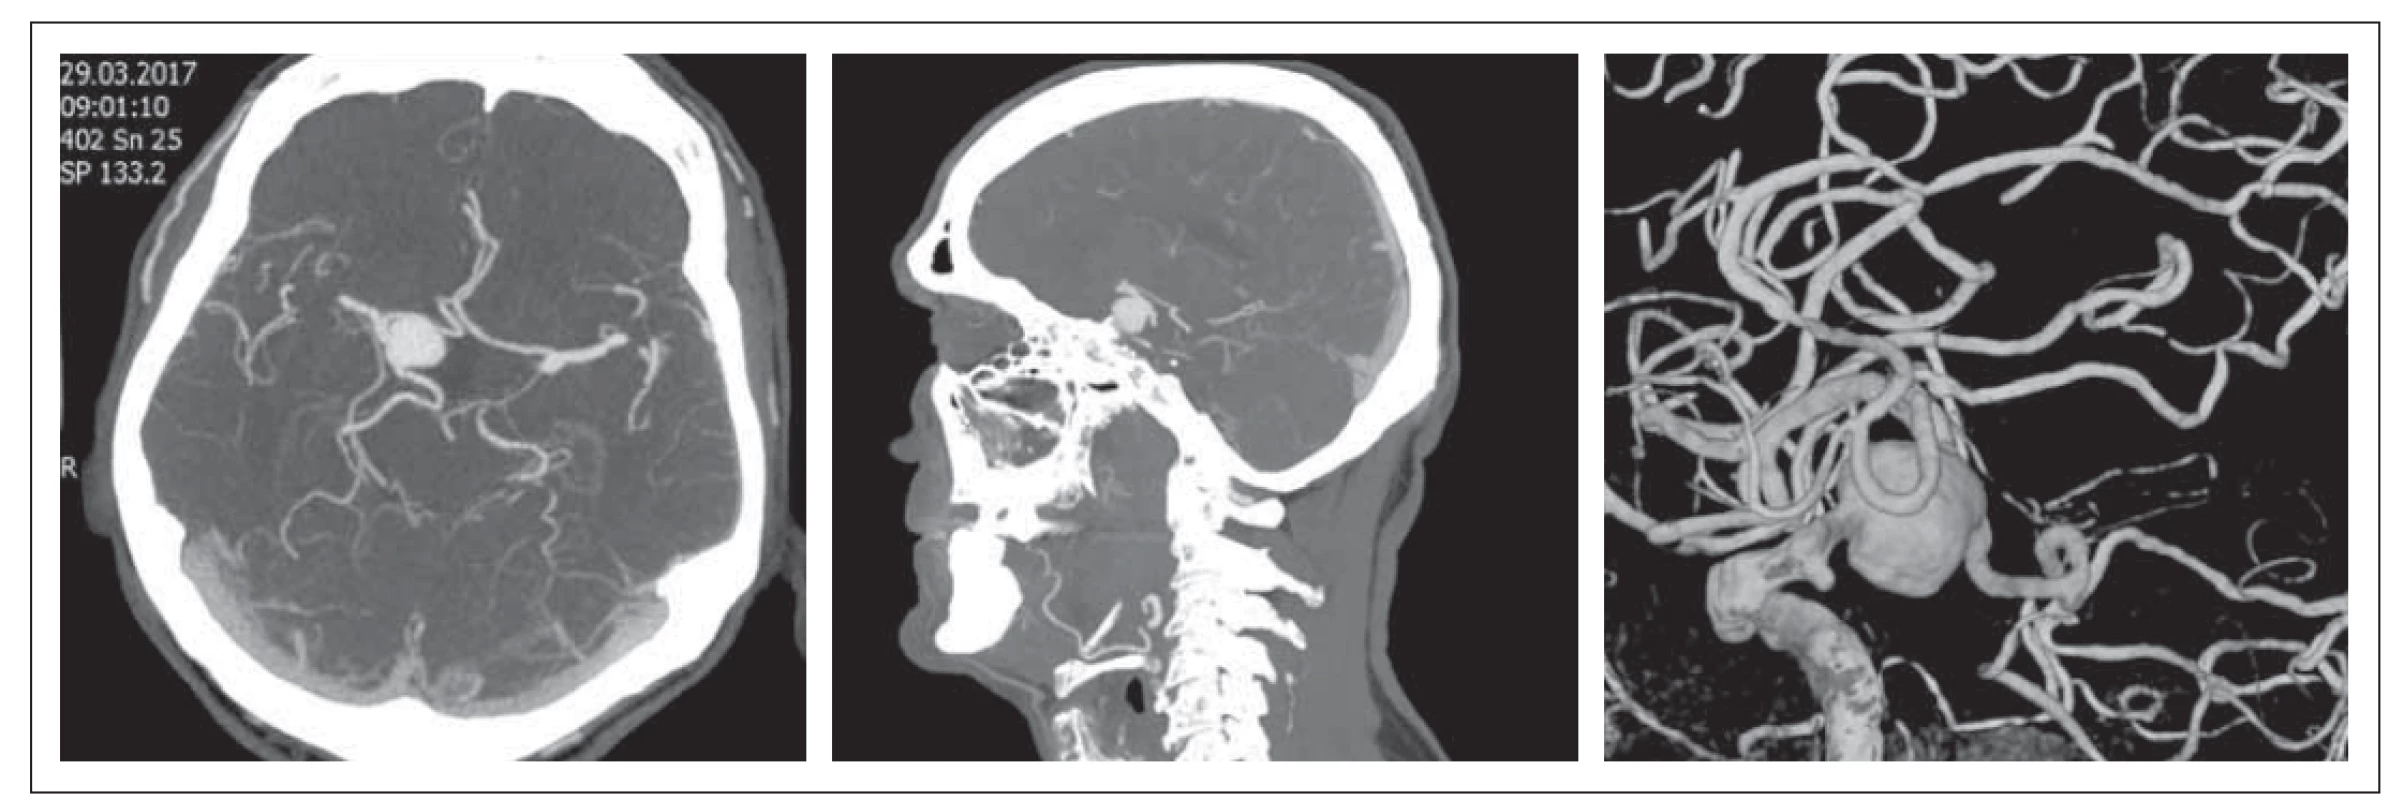 Obr. 1. MR mozku. Prolaktinom se supraselární propagací – červenec 2015.<br>
Fig. 1. Brain MRI. Prolactinoma with supraselar growth – July 2015.